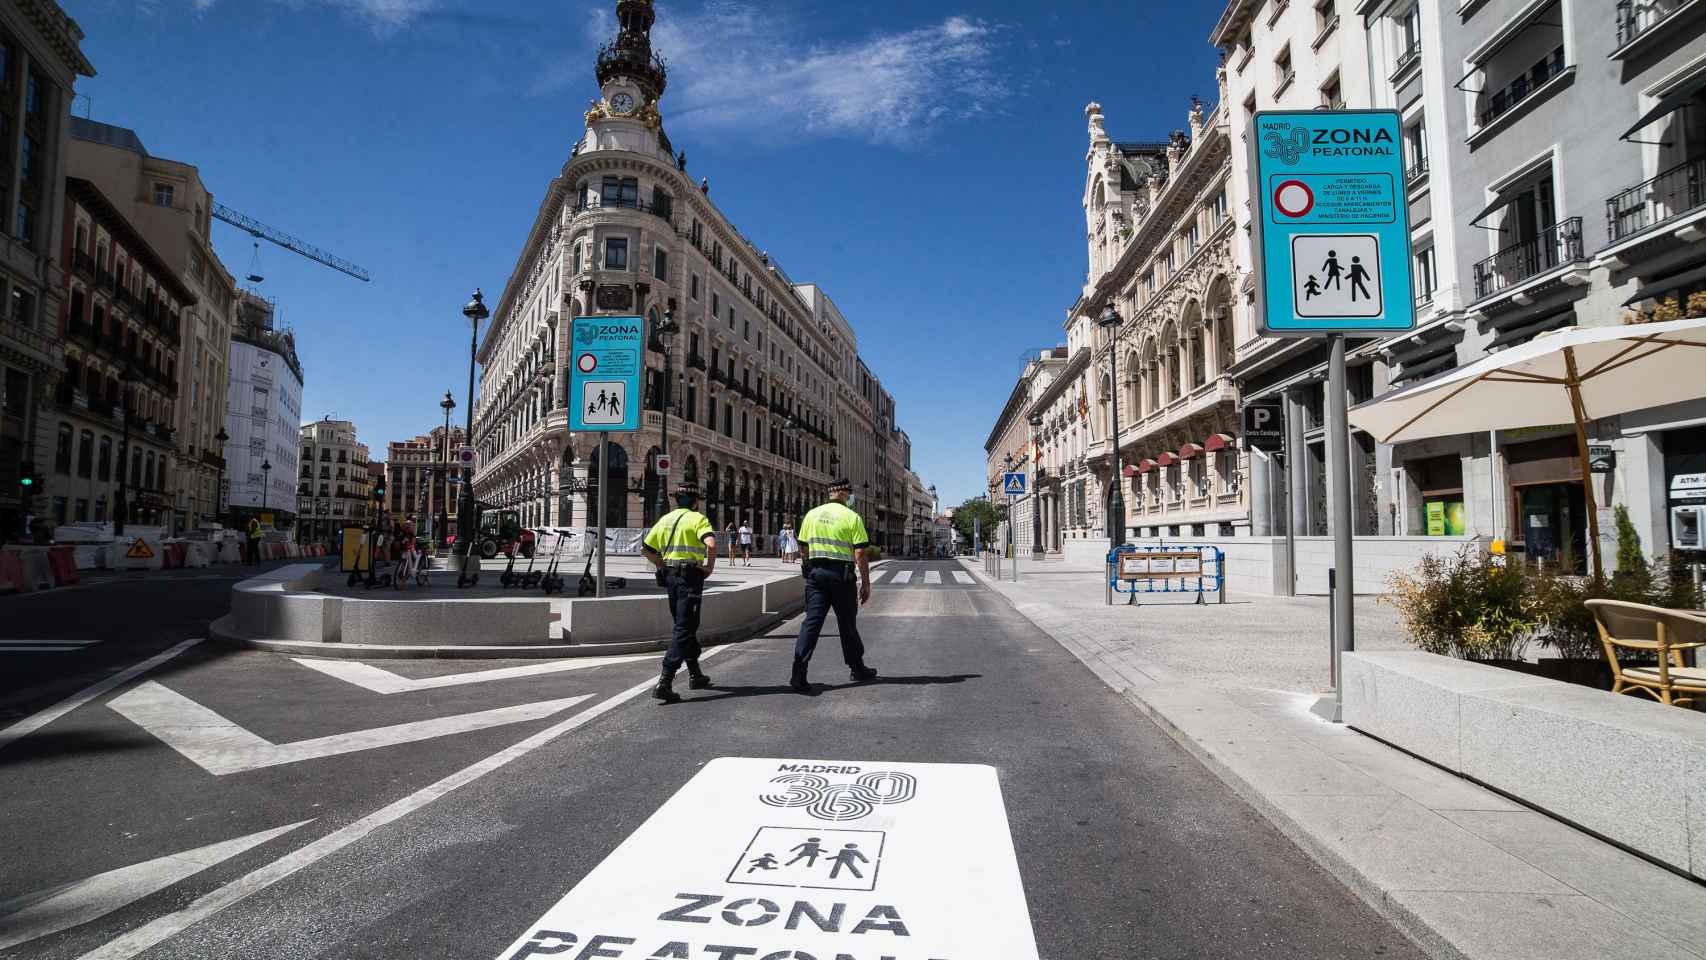 La peatonalización forma parte de las acciones recogidas dentro del plan Madrid 360 del Ayuntamiento.